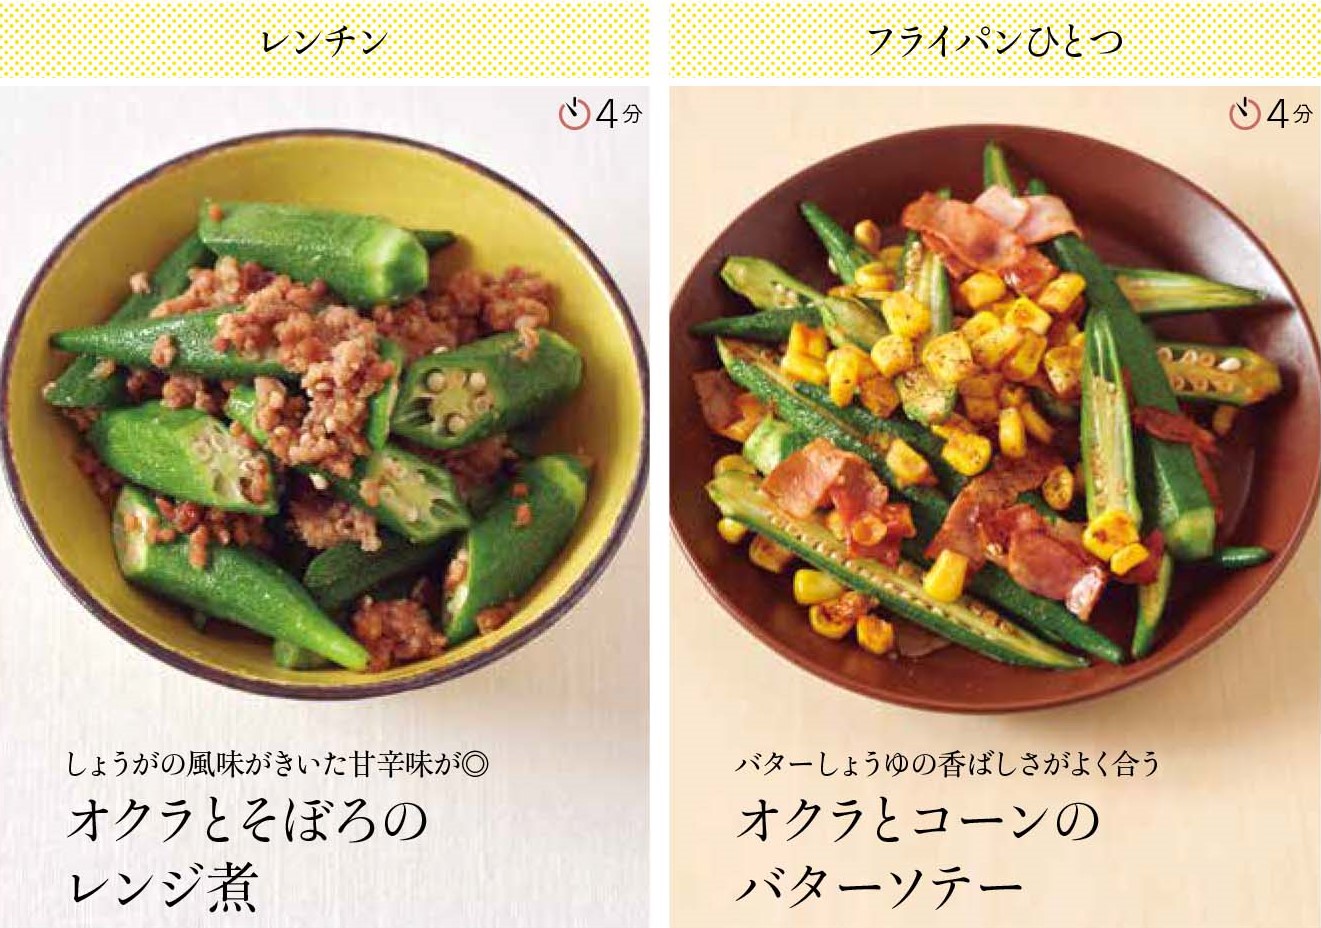 「おいしい副菜」オクラの6パターンの料理法